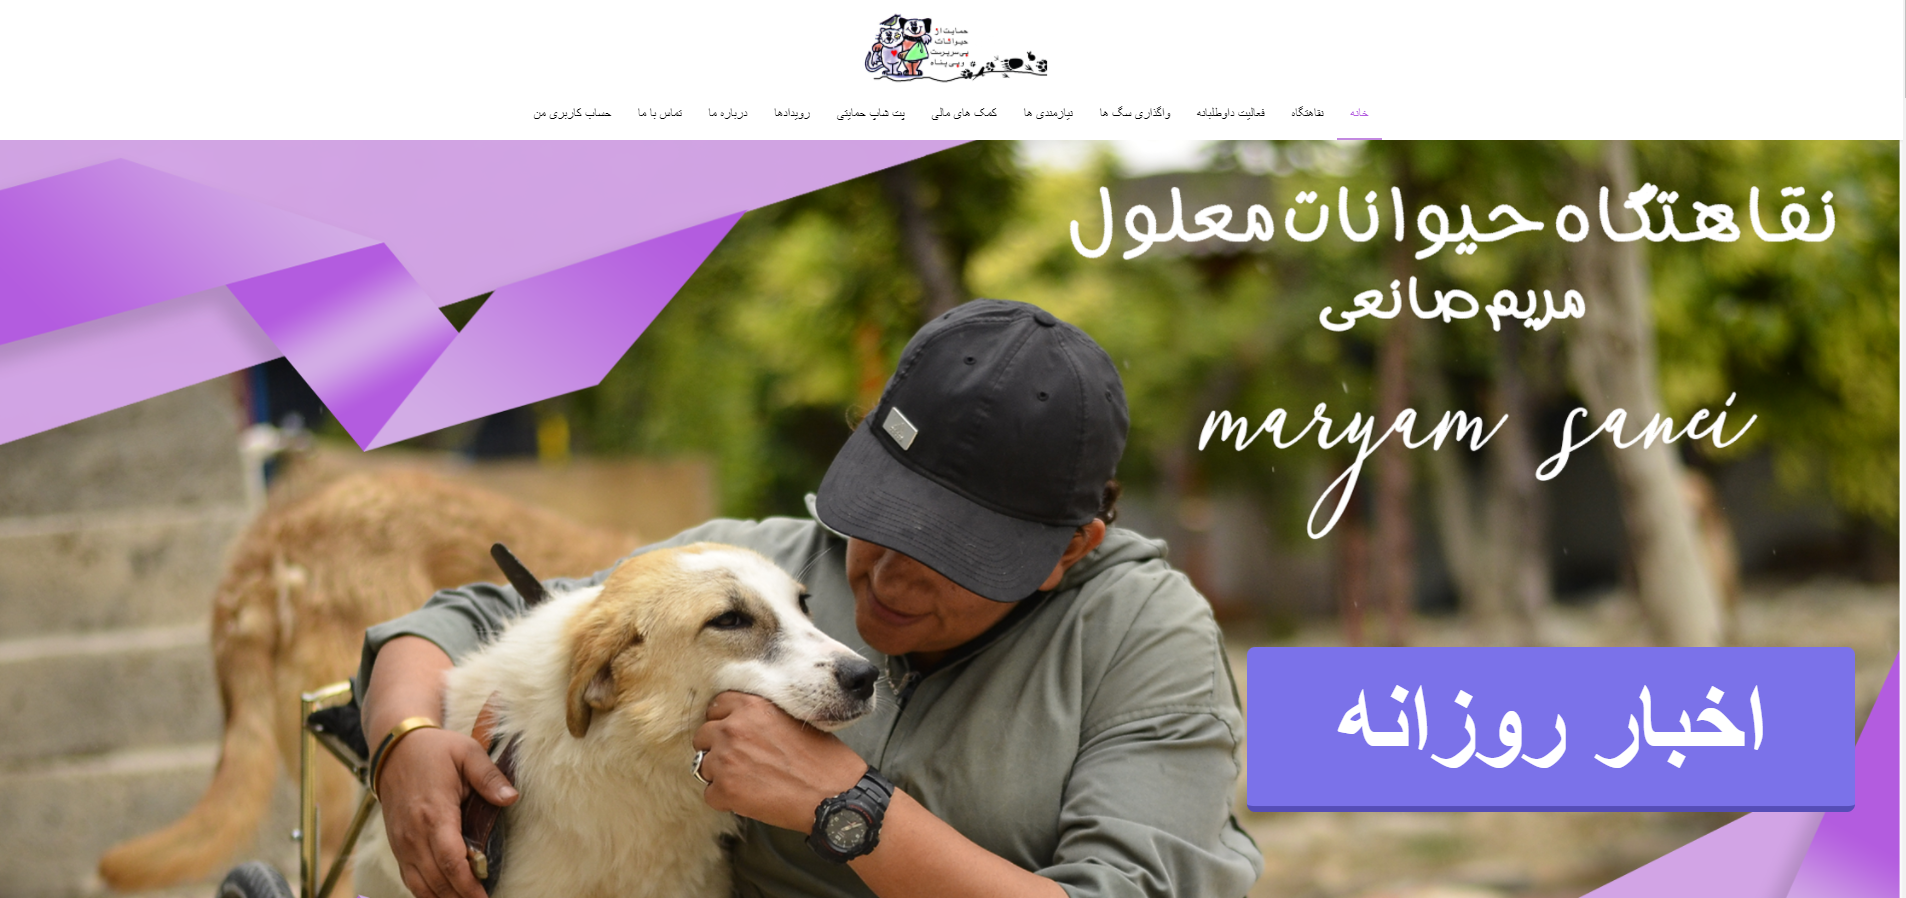 خانه_ وب سایت رسمی مجموعه نقاهتگاه حیوانات معلول مریم صانعی